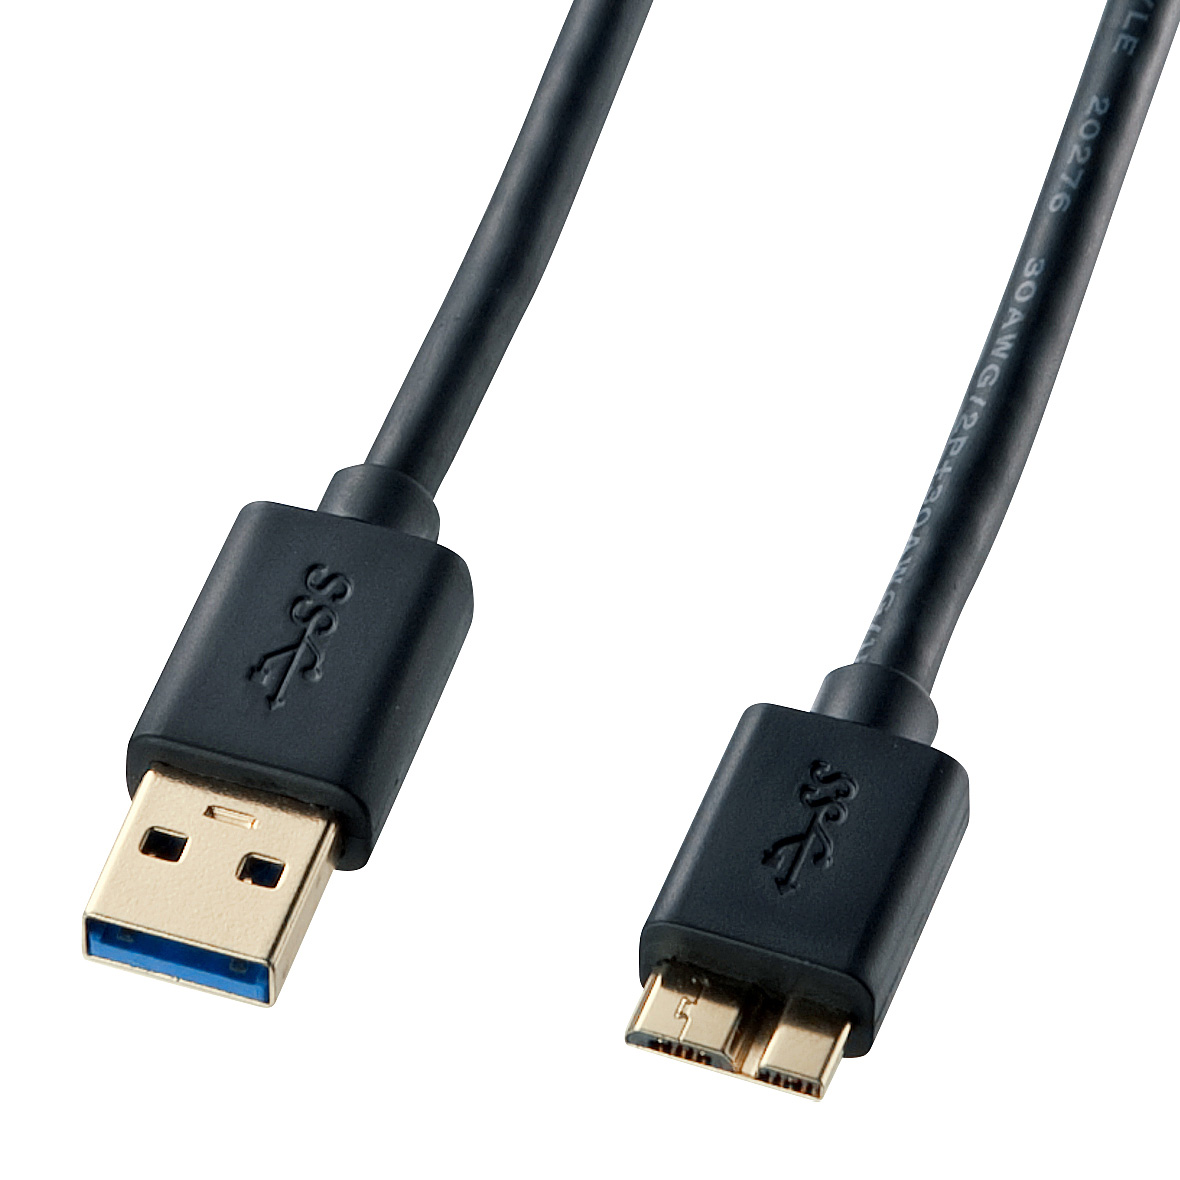 對應USB 3.0/3.1的Micro電纜線 KU30-AMC05BK